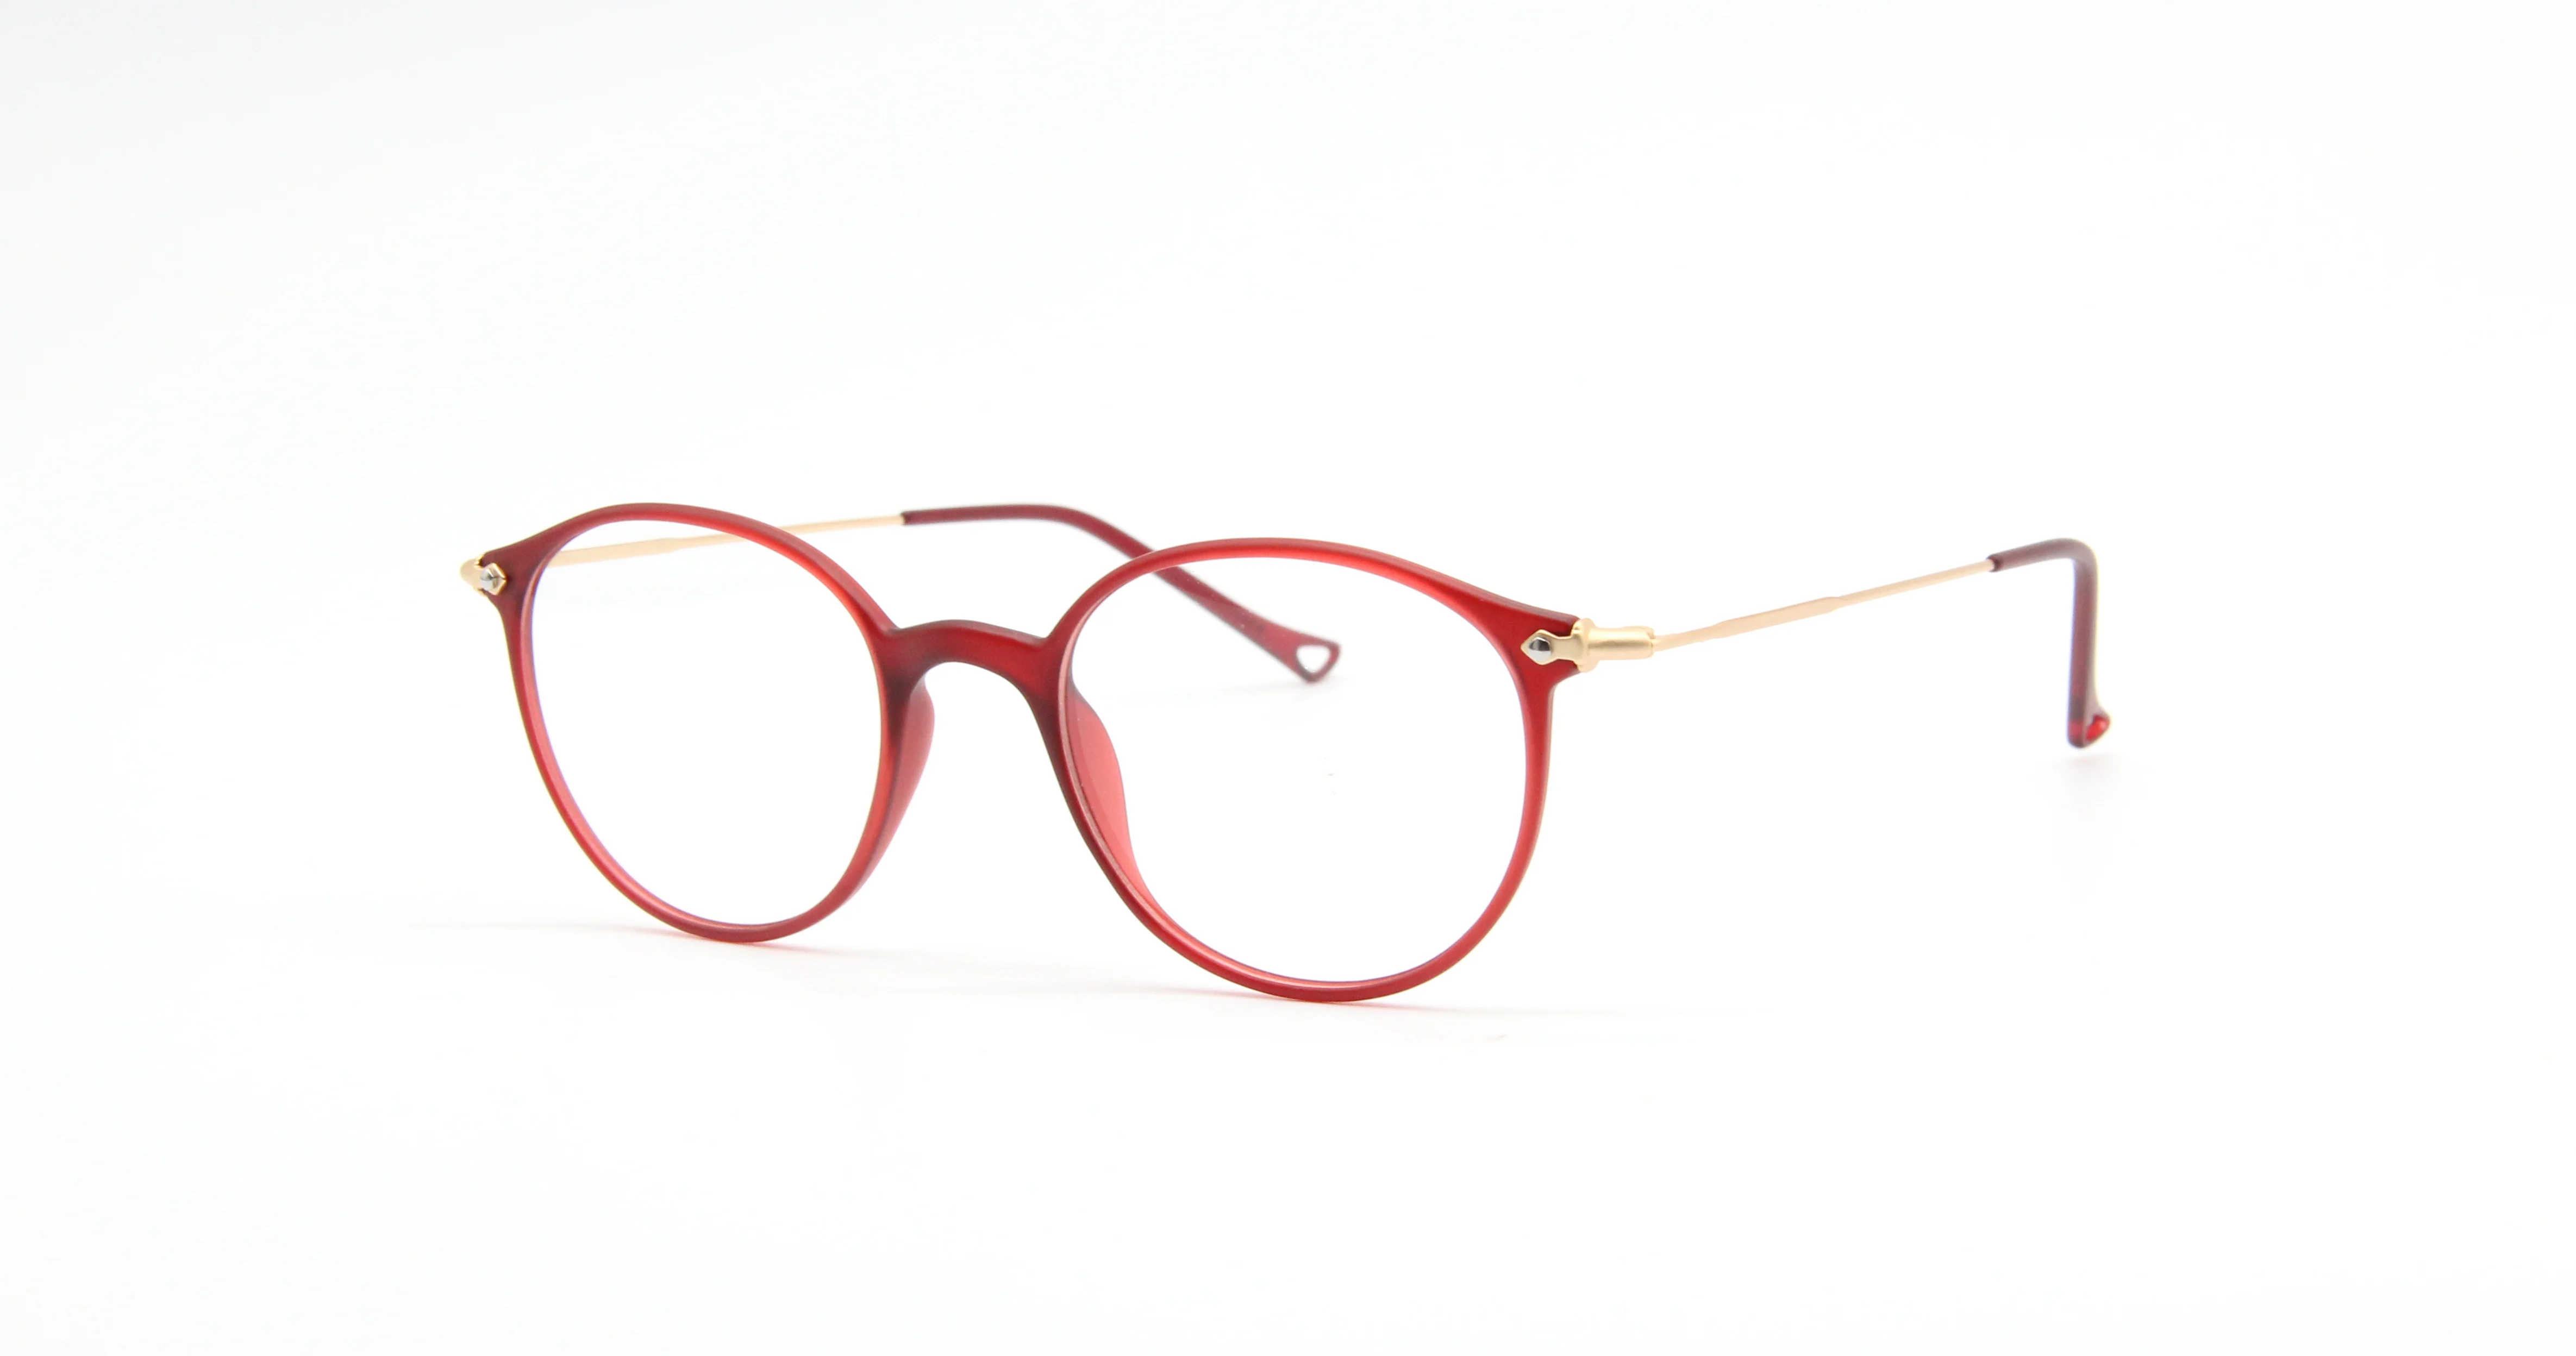 

Круглый Высокое качество Винтаж Для мужчин очки для близорукости Оправы для очков Для женщин Для мужчин оптика очки оптика